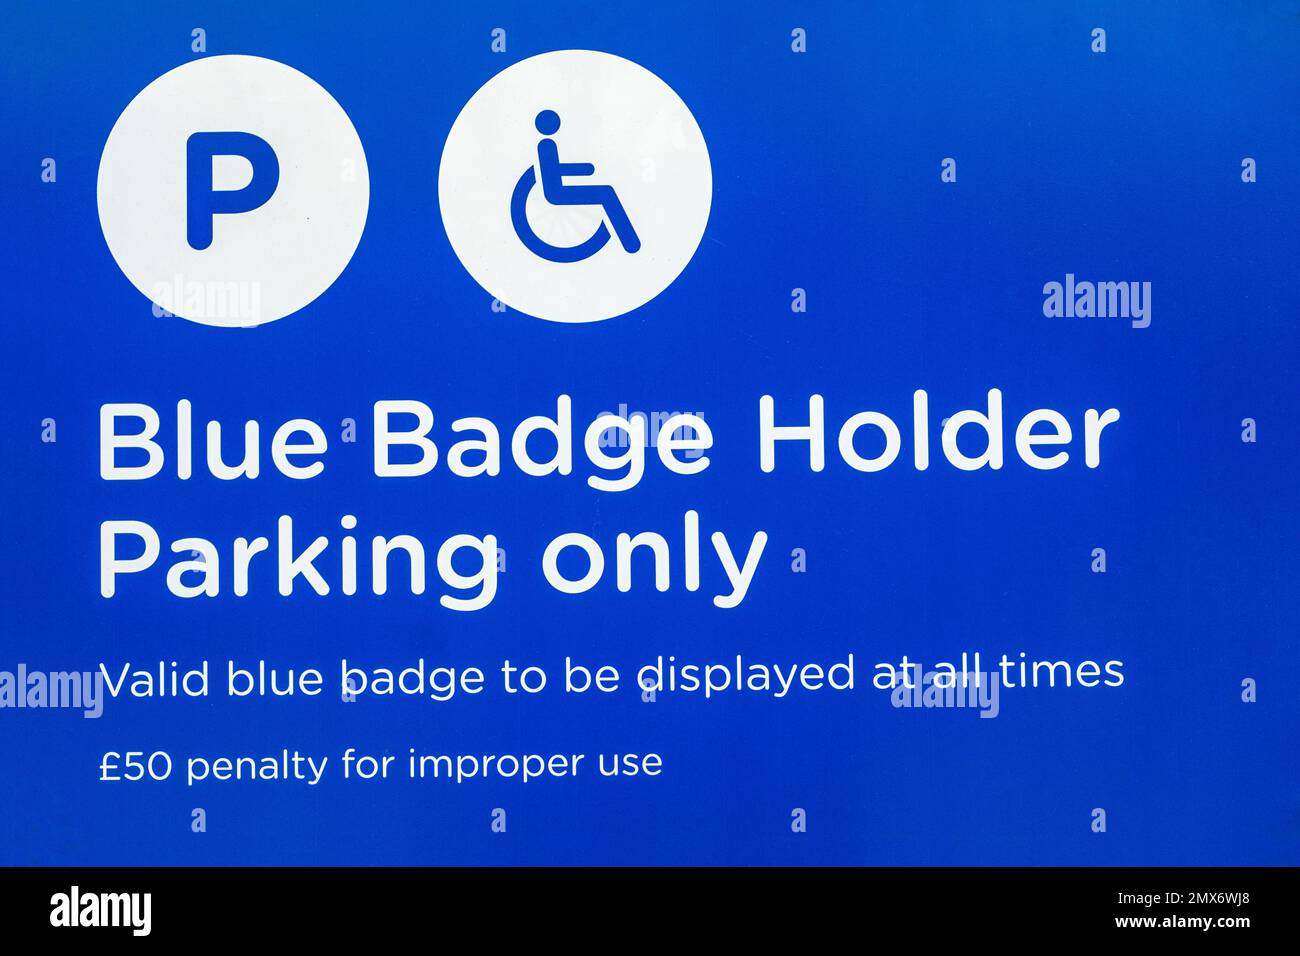 Porte-badge bleu parking panneau warner Royaume-Uni Banque D'Images